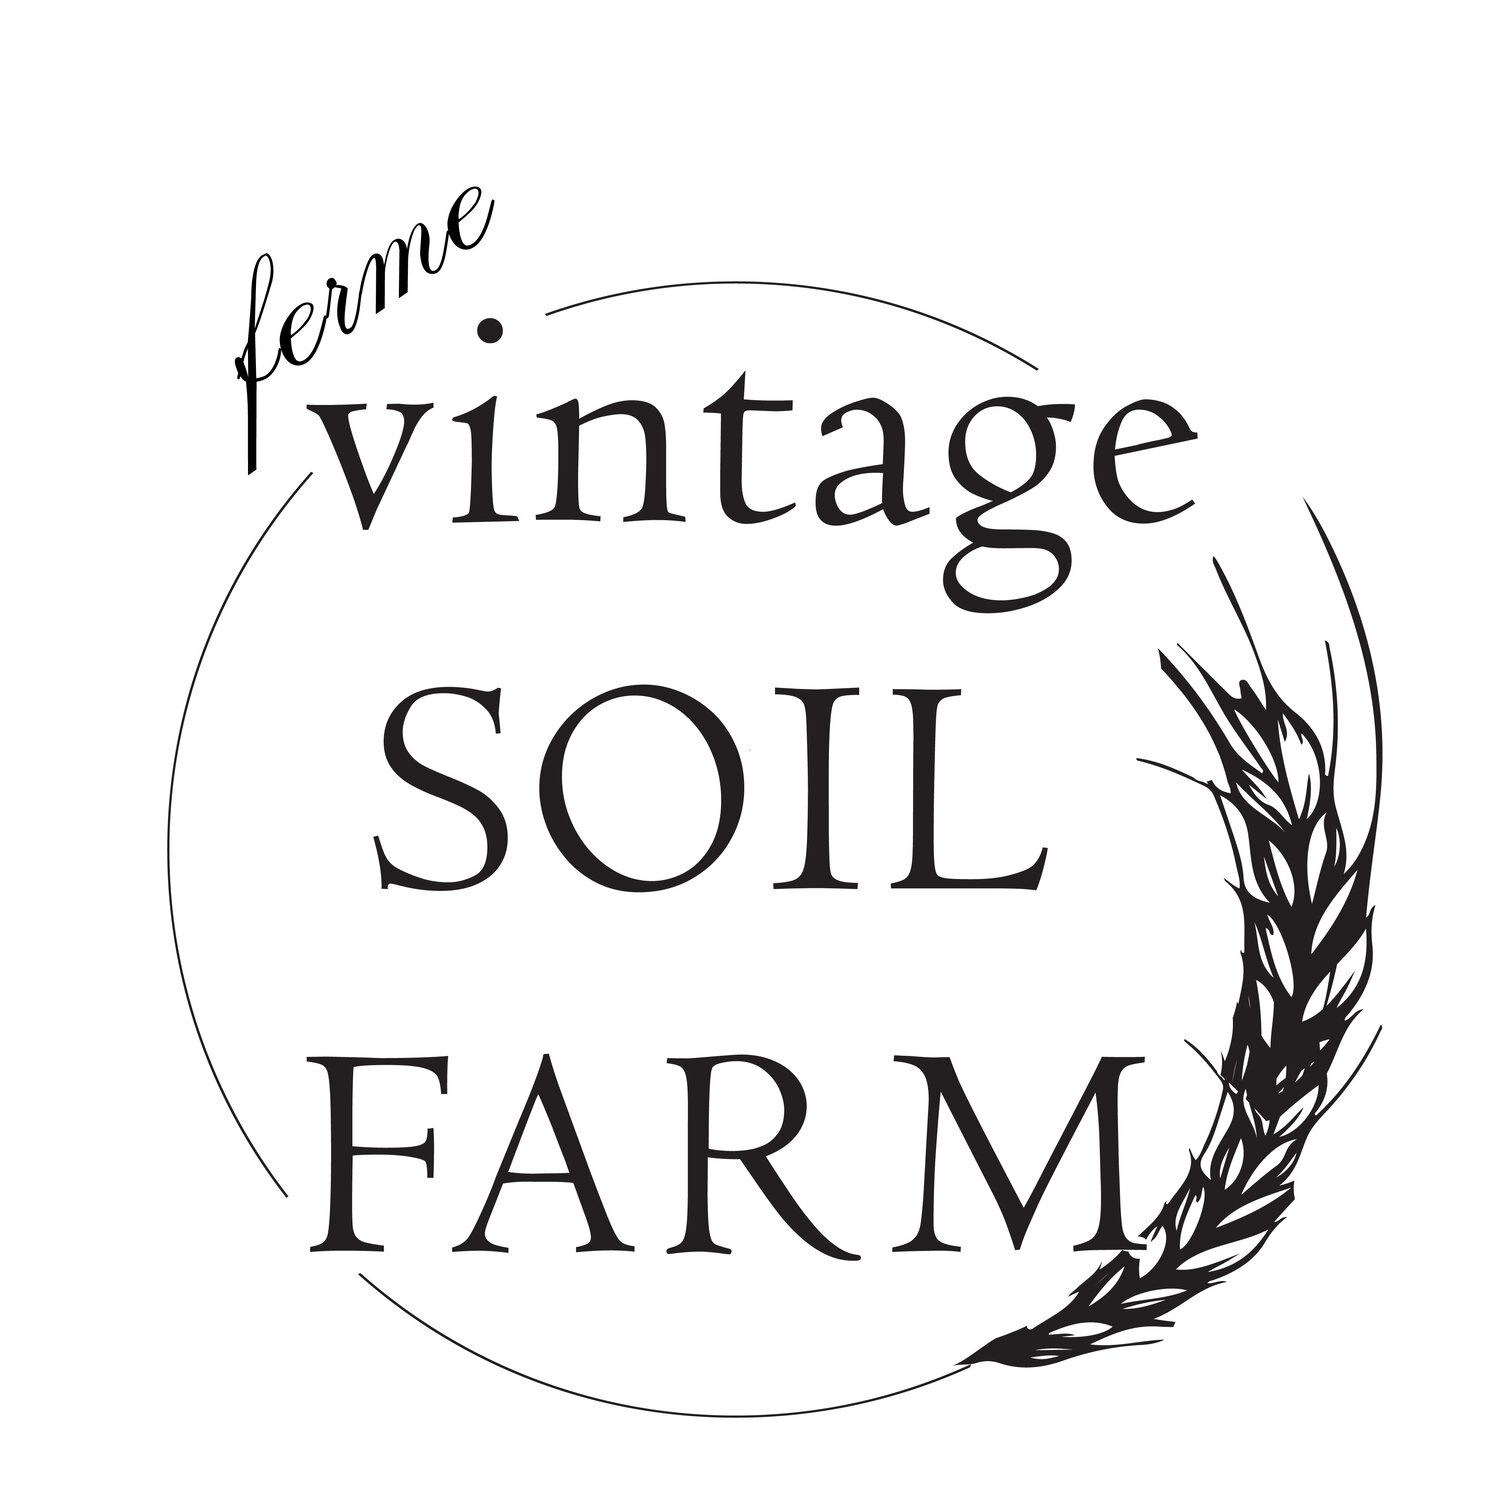 Vintage Soil Farm